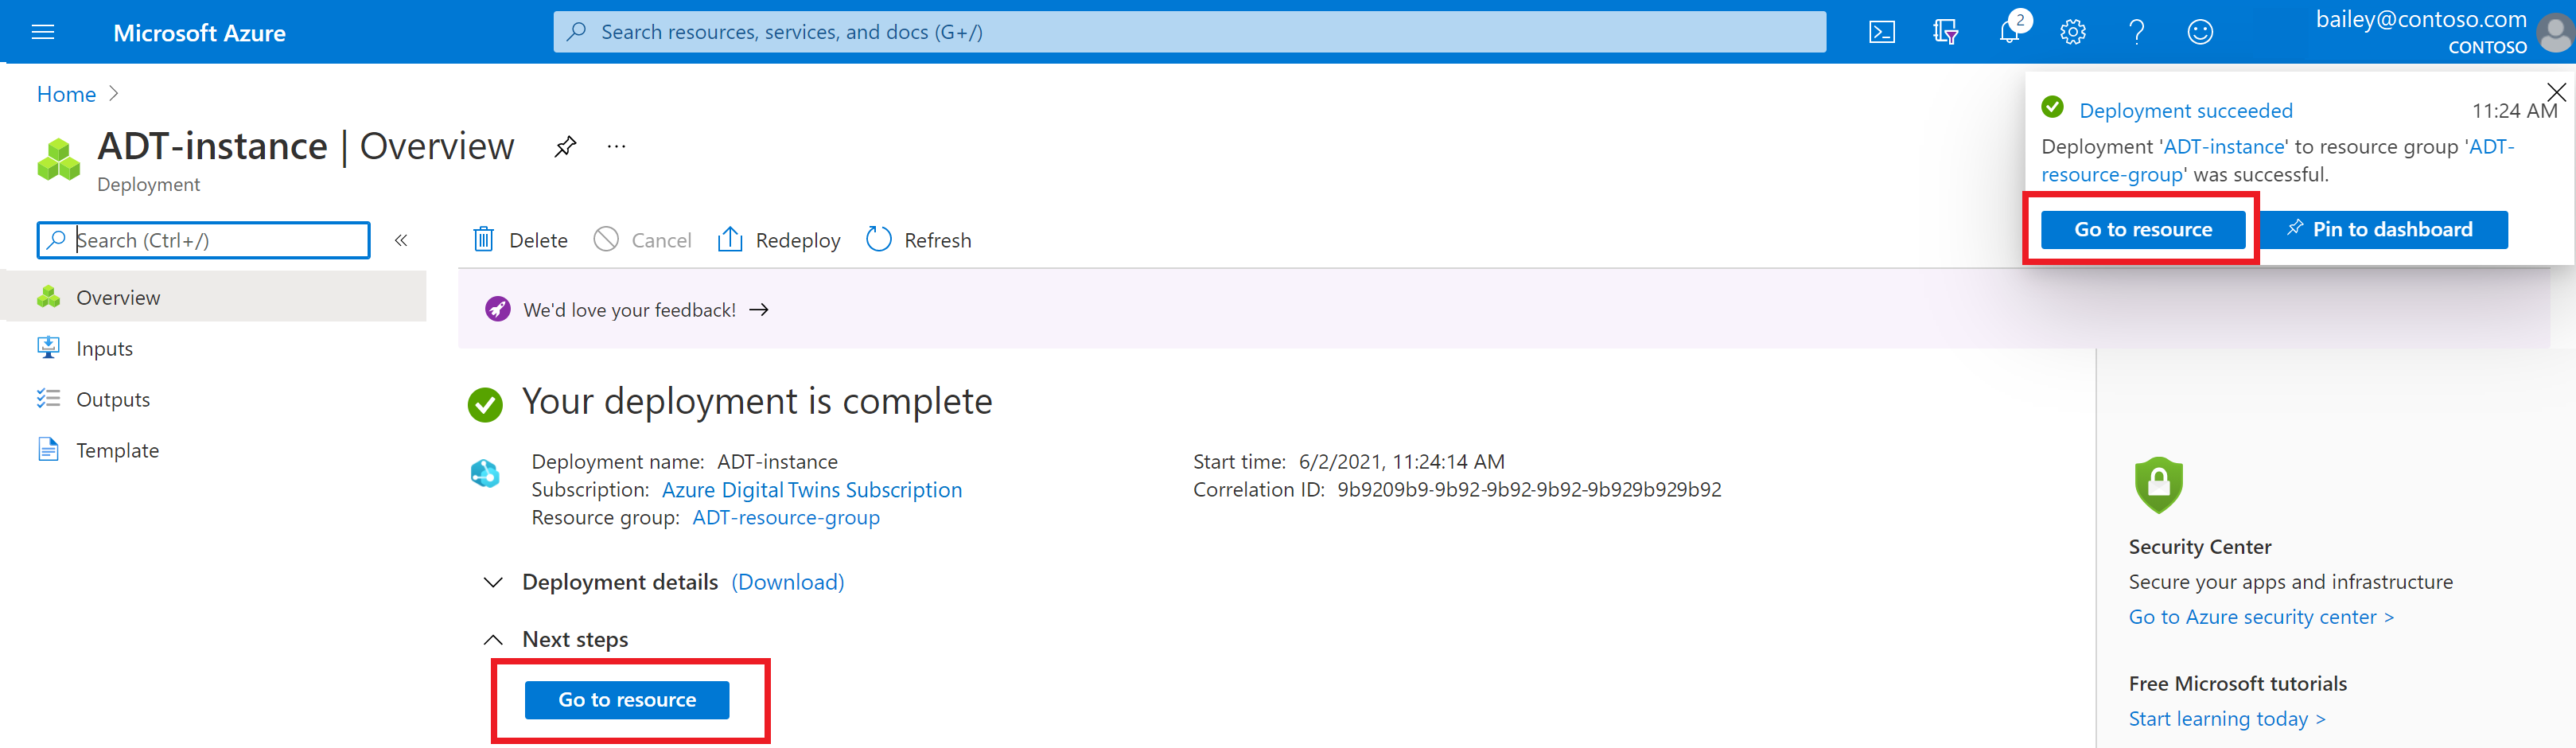 Cuplikan layar halaman penerapan untuk Azure Digital Twins di portal Microsoft Azure. Halaman menunjukkan bahwa penerapan selesai.